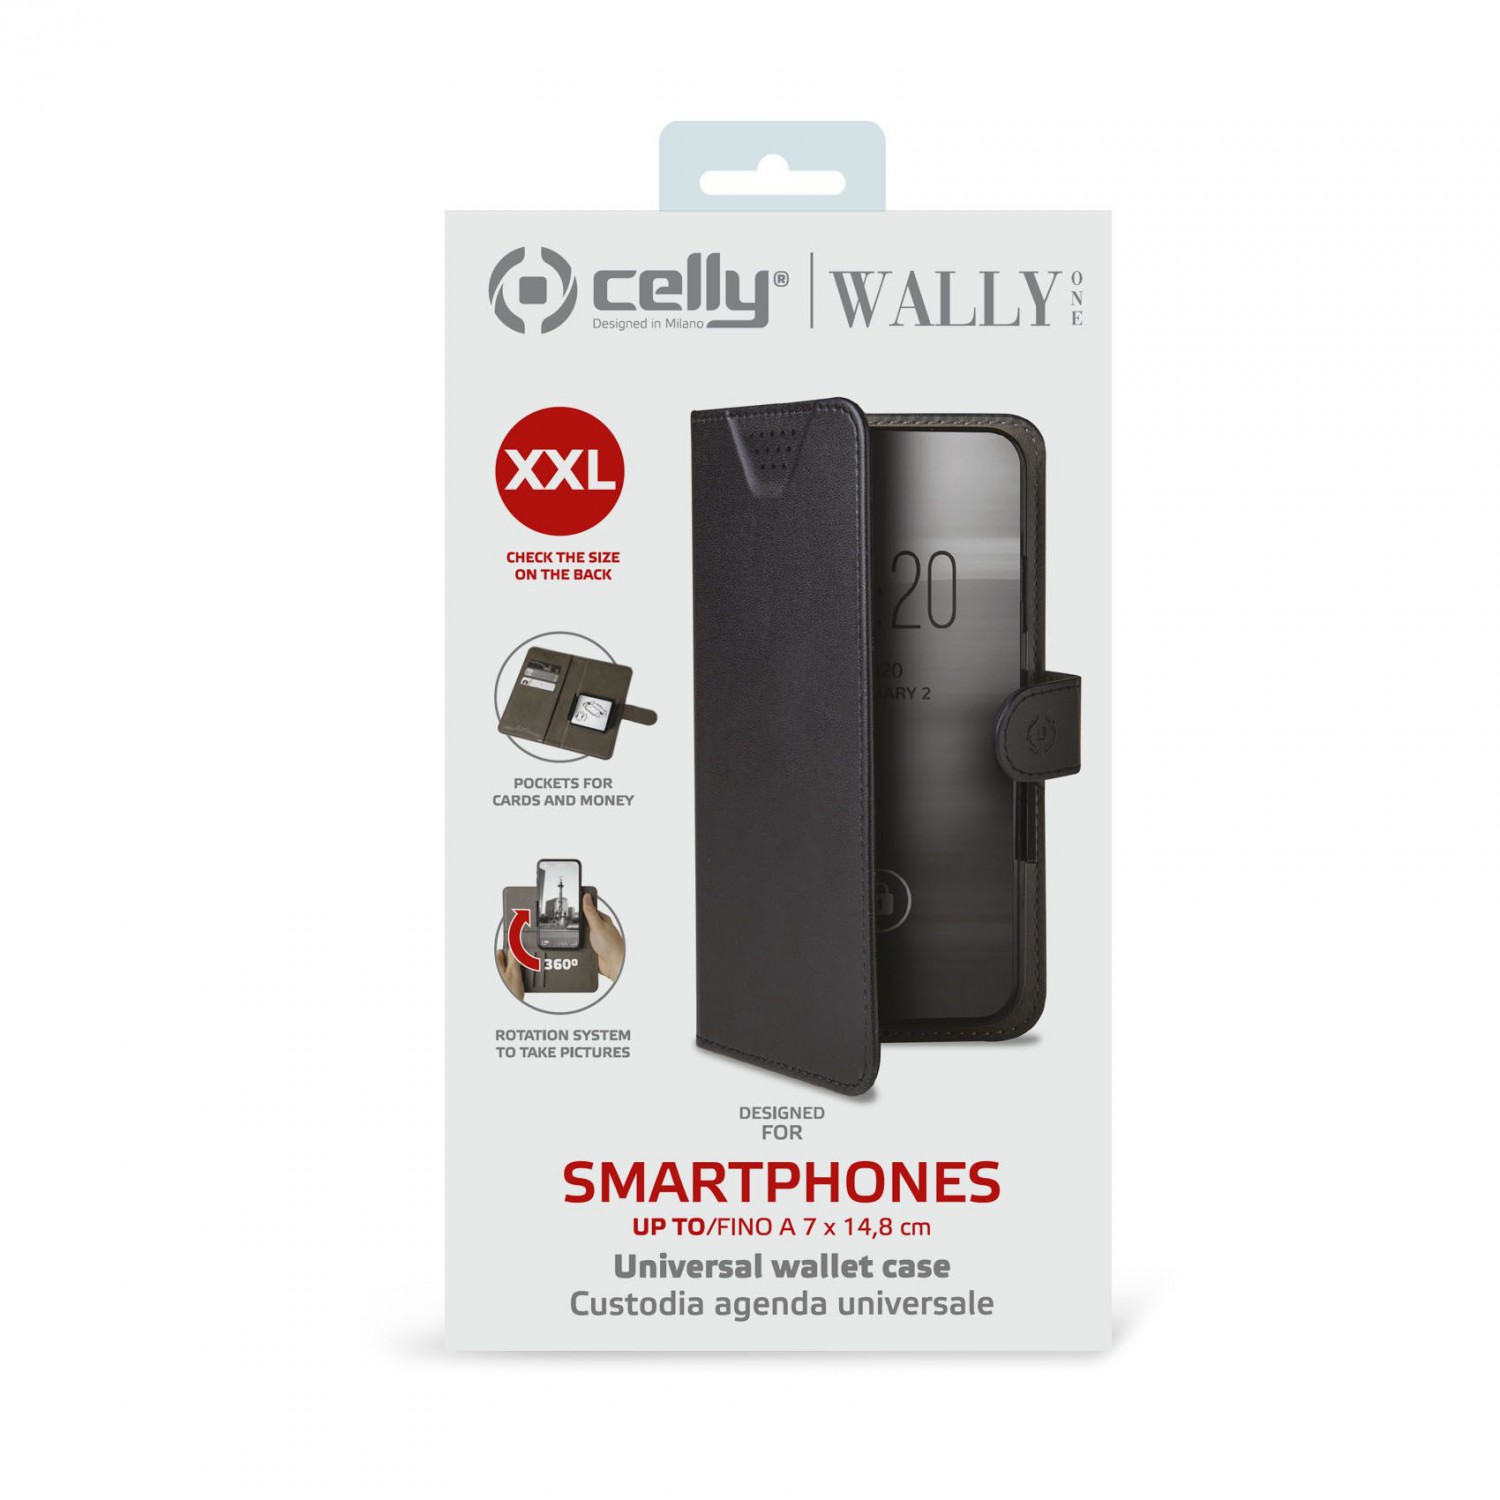 CELLY Wally One univerzální flipové pouzdro velikost XXL pro 5.0" - 5.5", černé